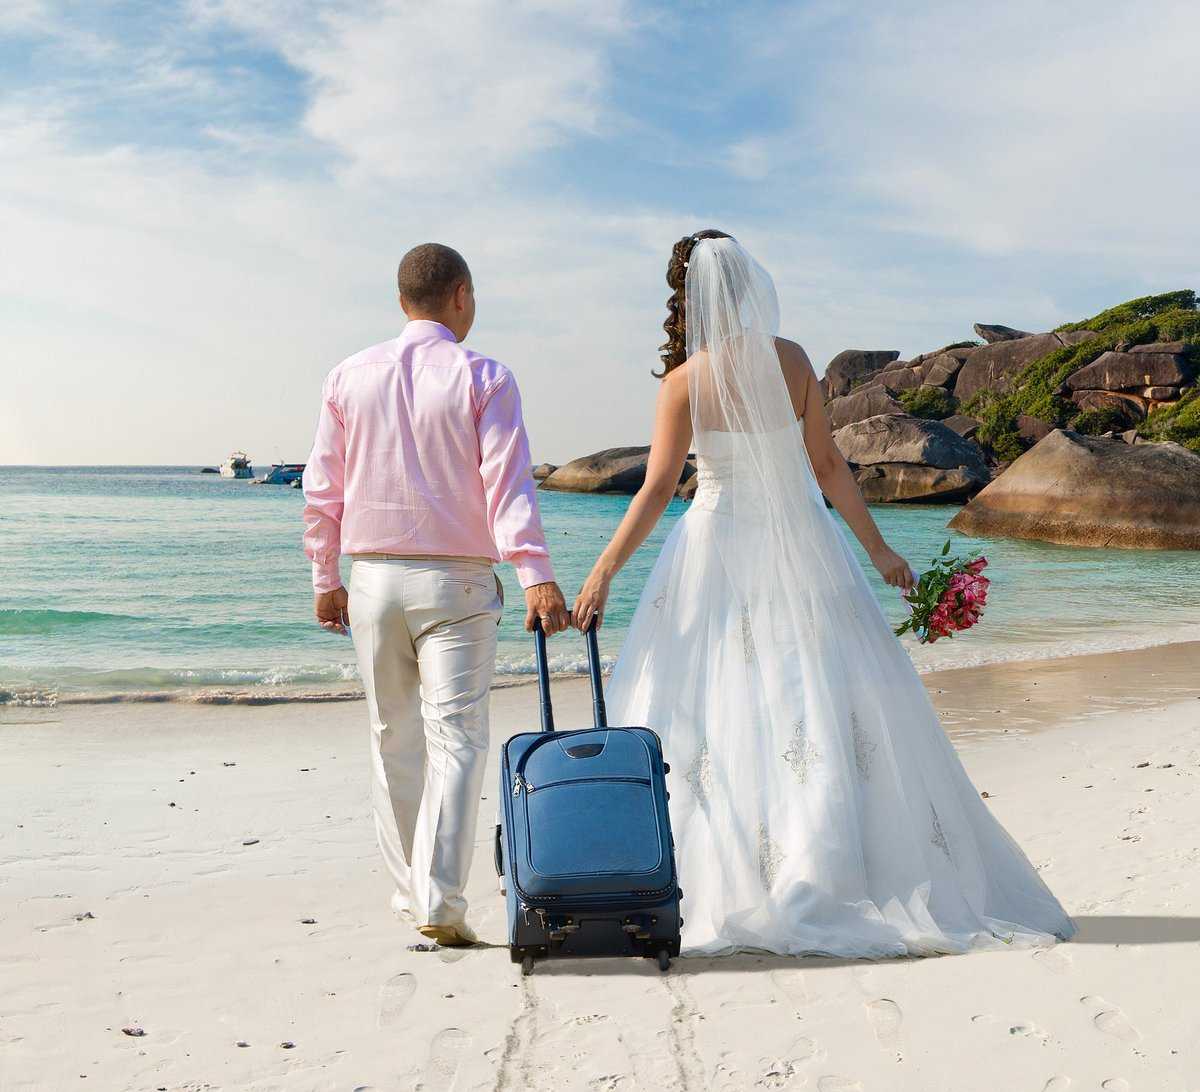 Планируя поездку на медовый месяц вы задались вопросом: «В свадебное путешествие куда поехать» Перед молодоженами открыты все красивые места Планеты: Европа Азия Америка Какие самые востребованные направления